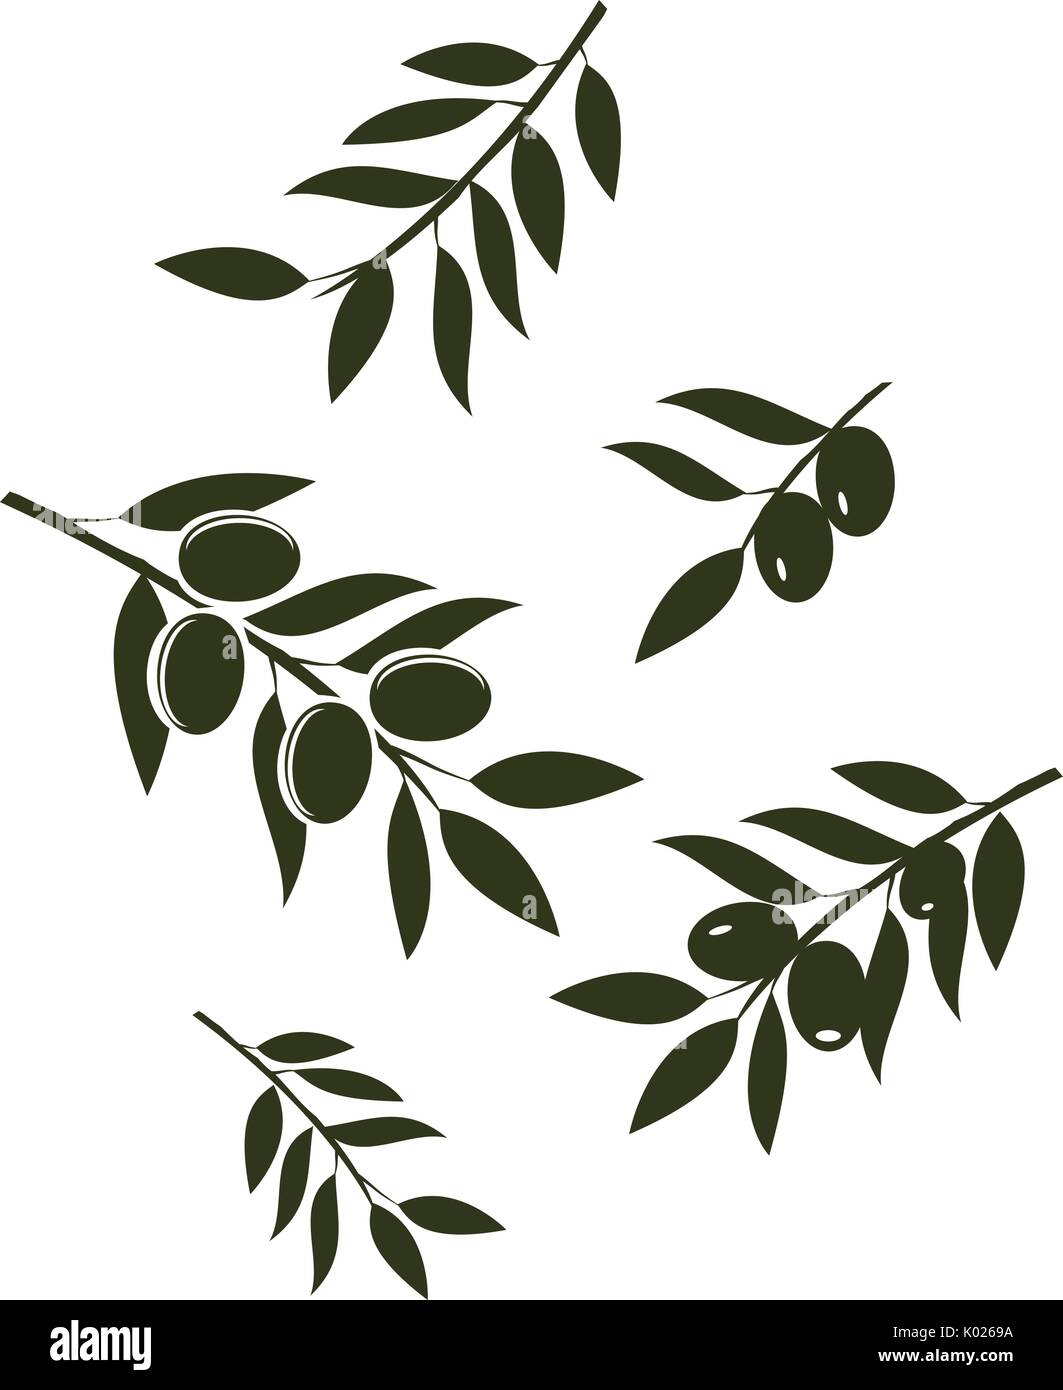 Vektor-Illustration von Olivenzweigen isoliert auf weißem Hintergrund Stock Vektor